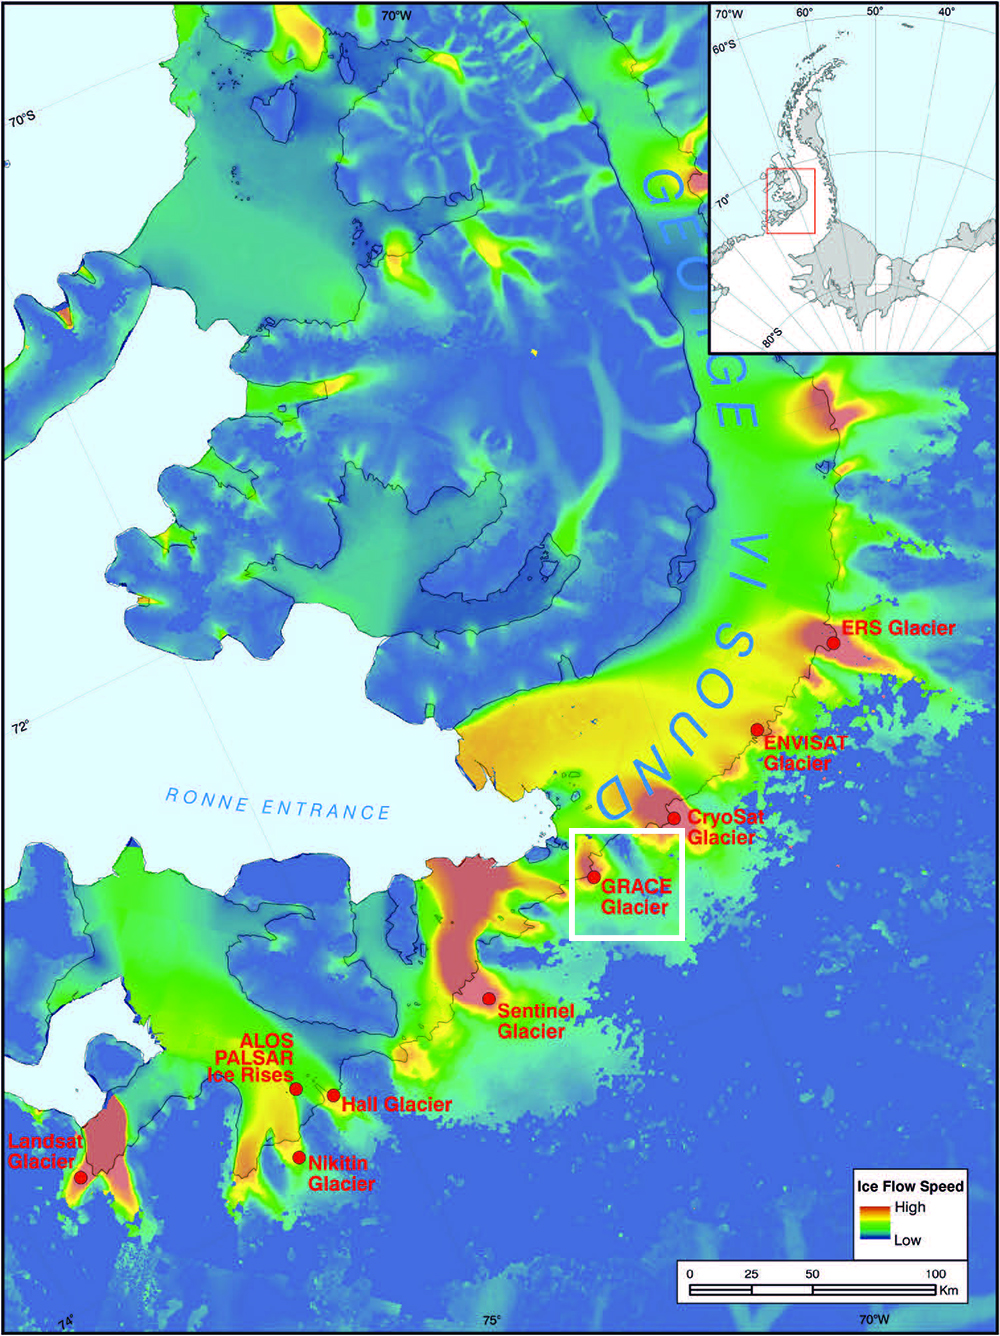 Thermal map of antarctic glaciers.